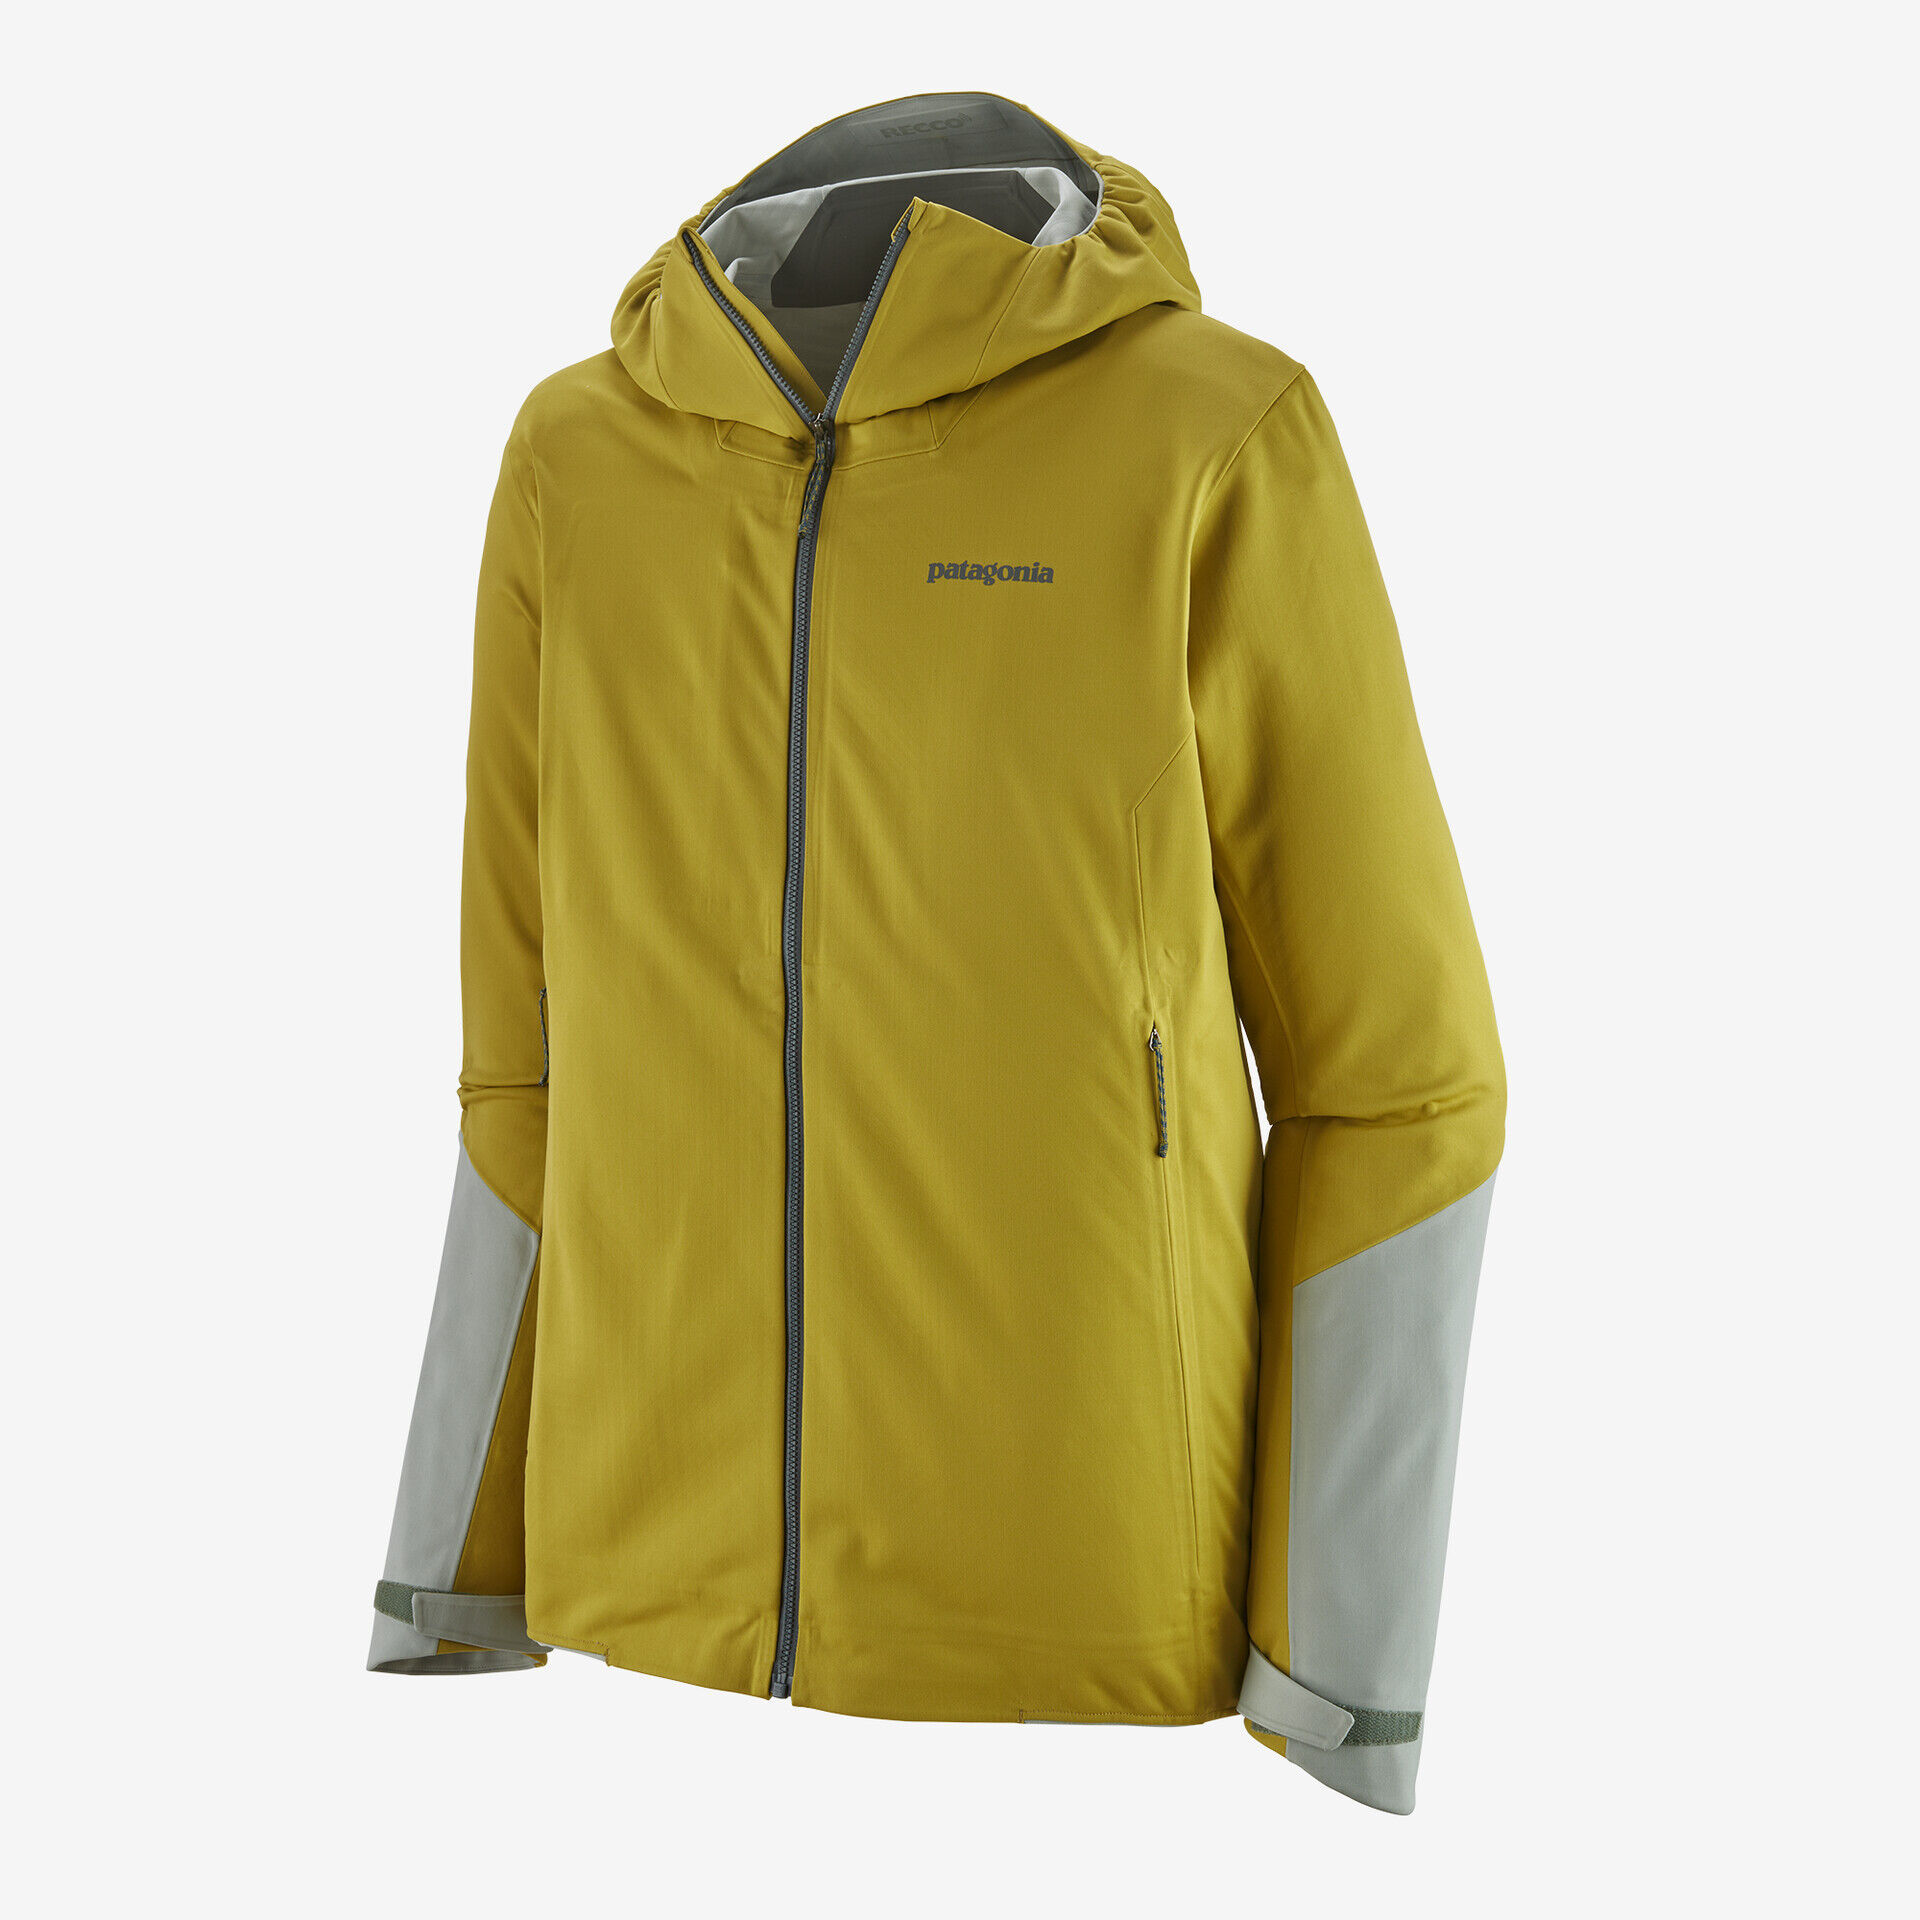 Patagonia Upstride Jkt - Ski jacket - Men's | Hardloop